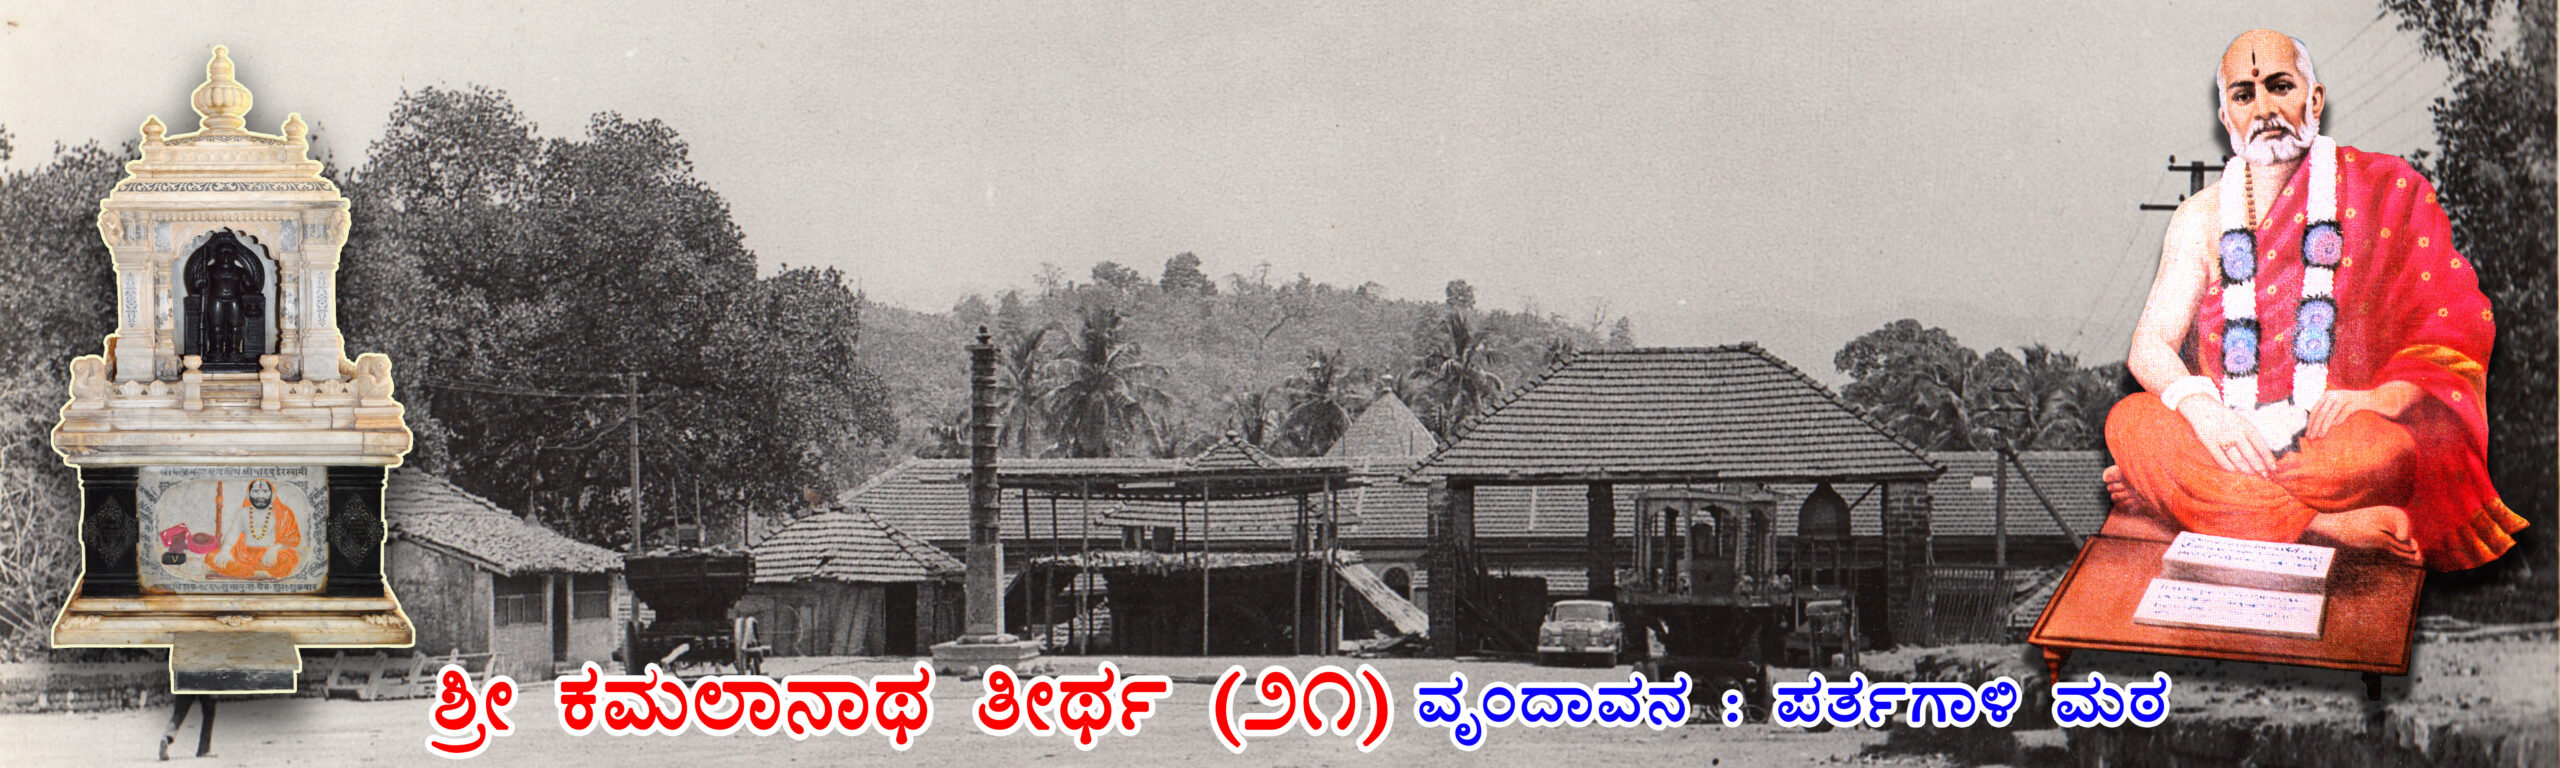 21 Kamalanath Kannada